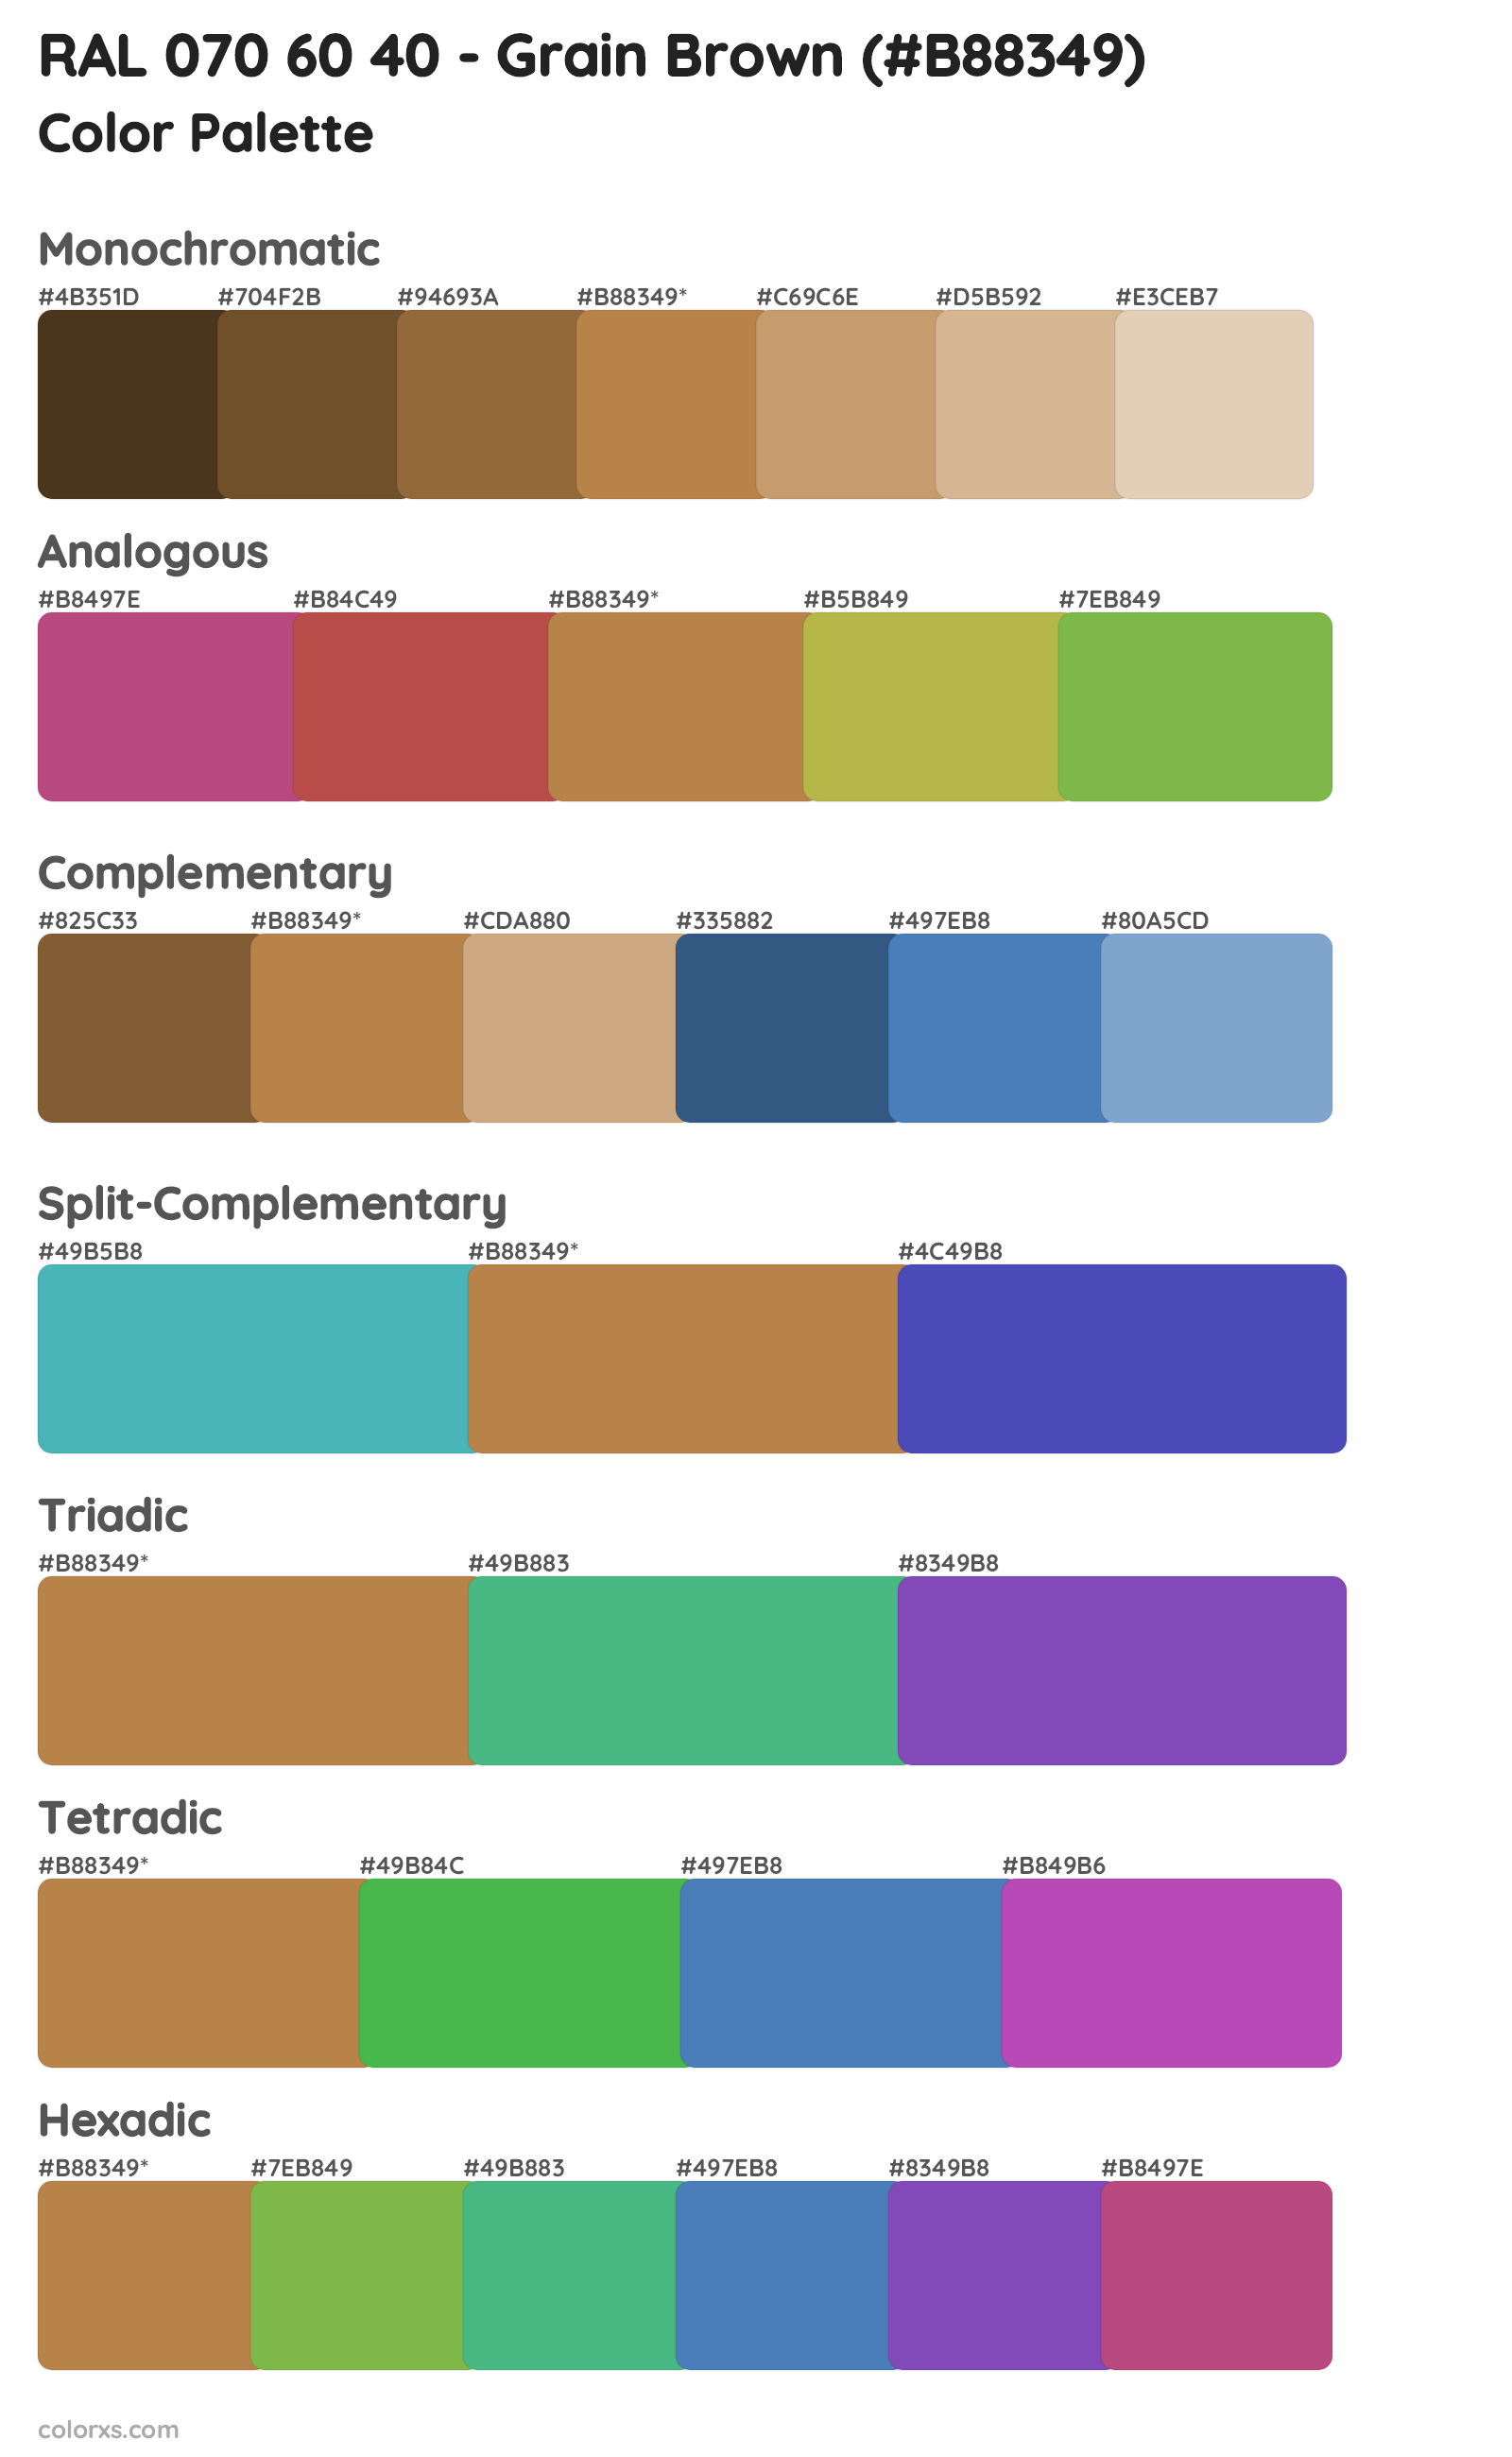 RAL 070 60 40 - Grain Brown Color Scheme Palettes